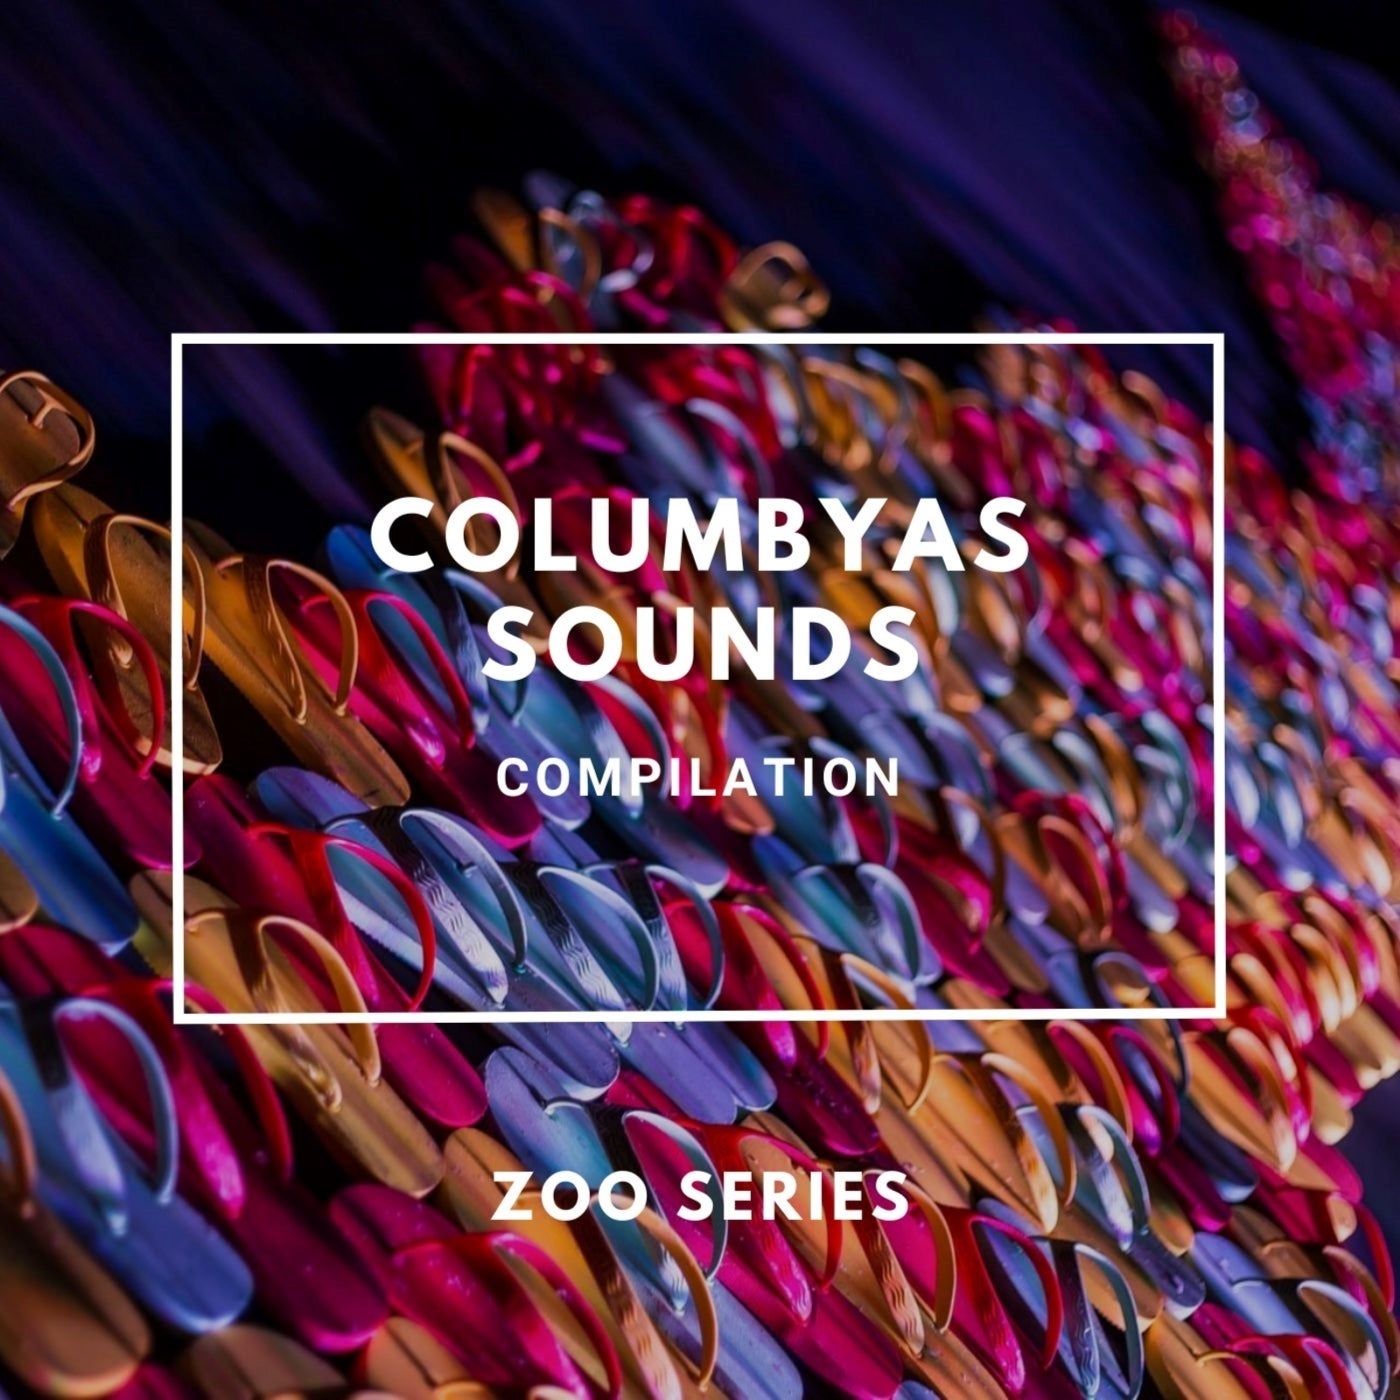 Columbyas Sounds